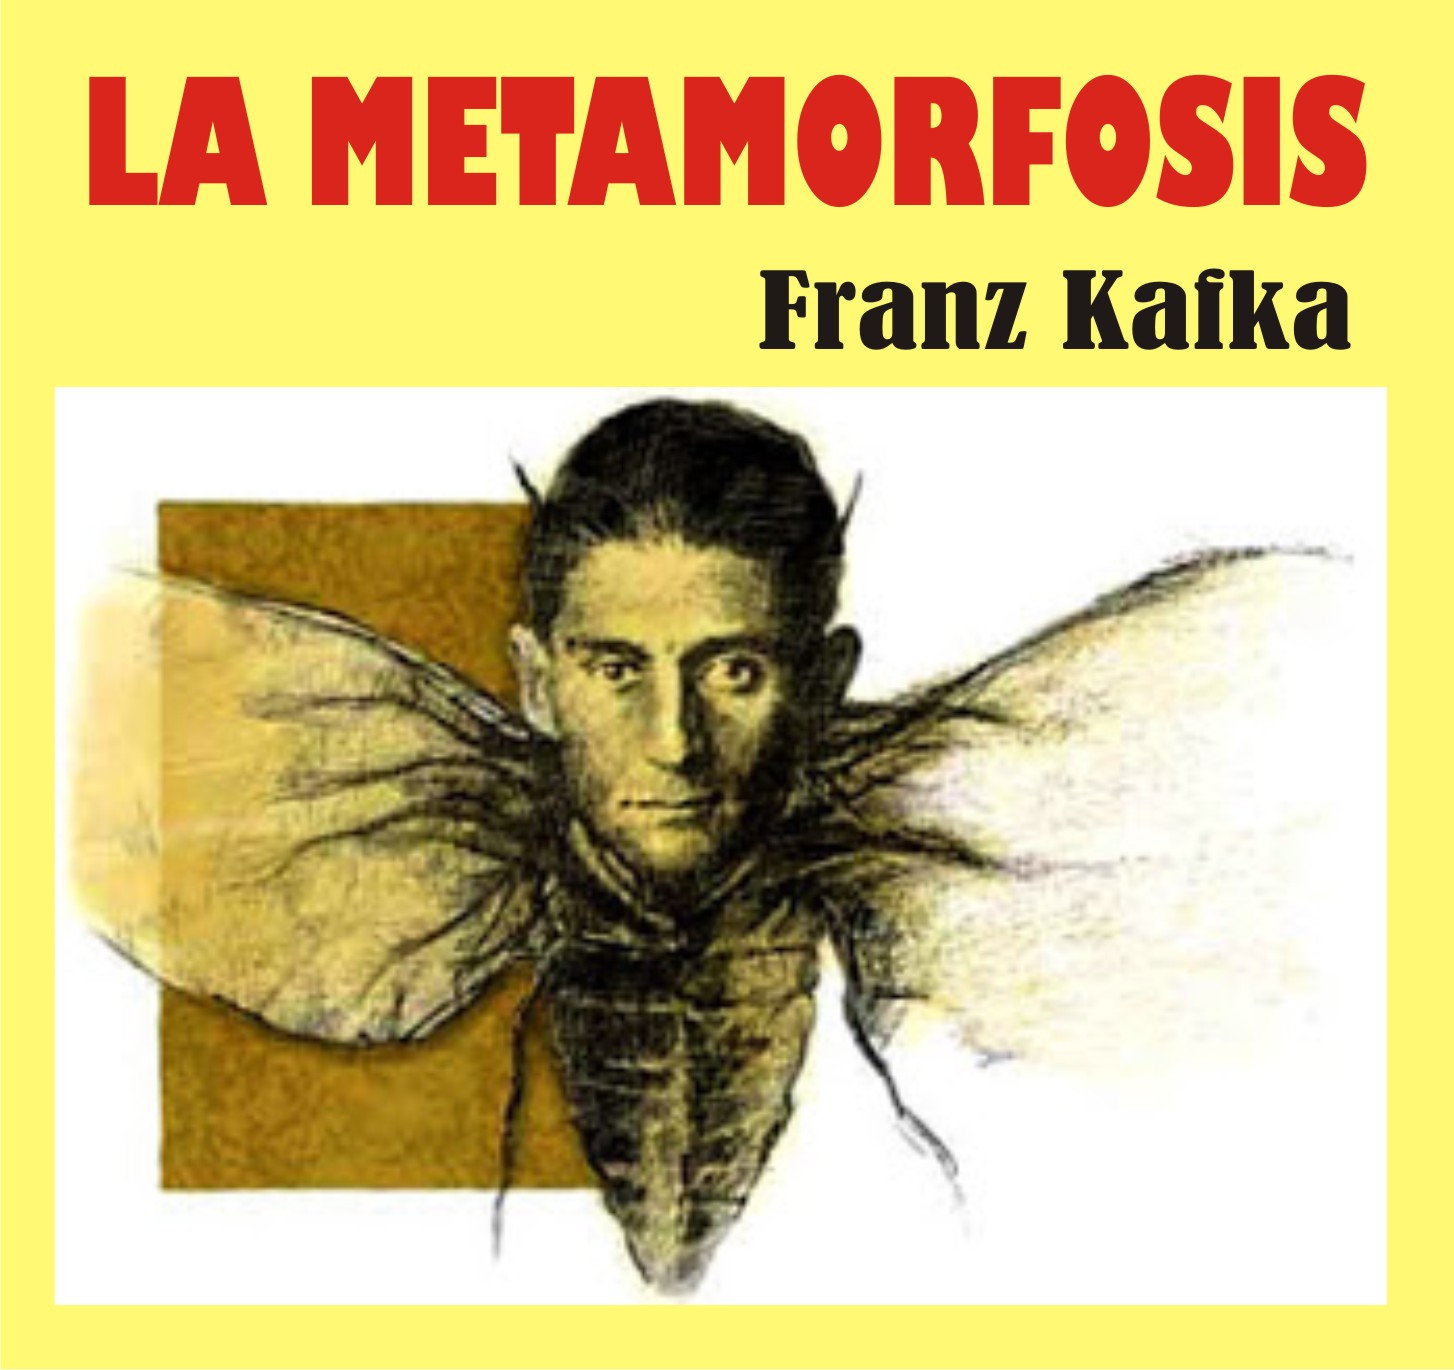 44 Ideas De Franz Kakfa La Metamorfosis Metamorfosis La Metamorfosis Kafka Clases De kulturaupice